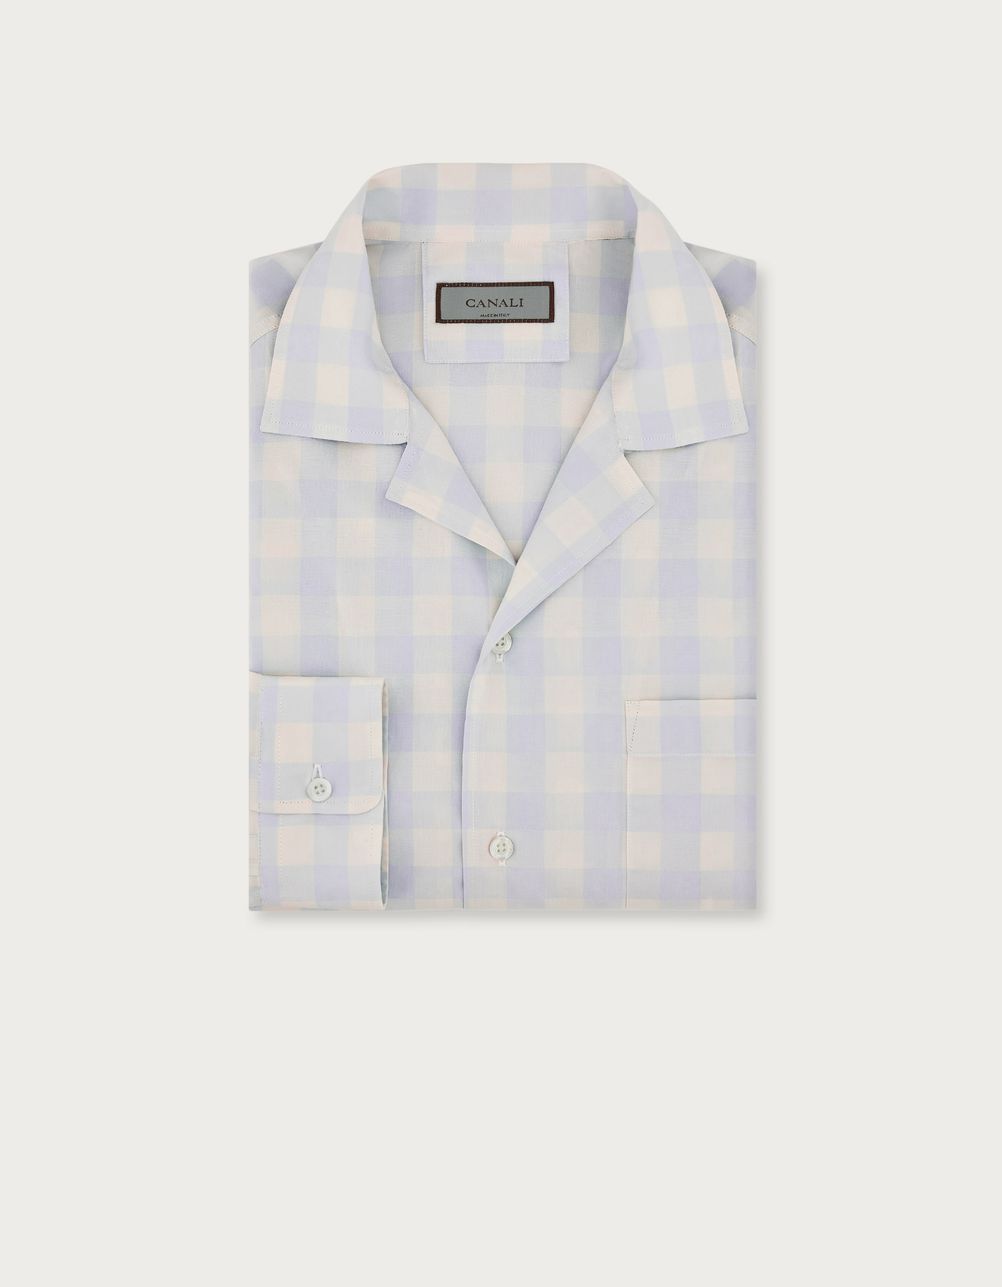 Chemise en coton à petits carreaux, bleu clair et blanche, coupe décontractée